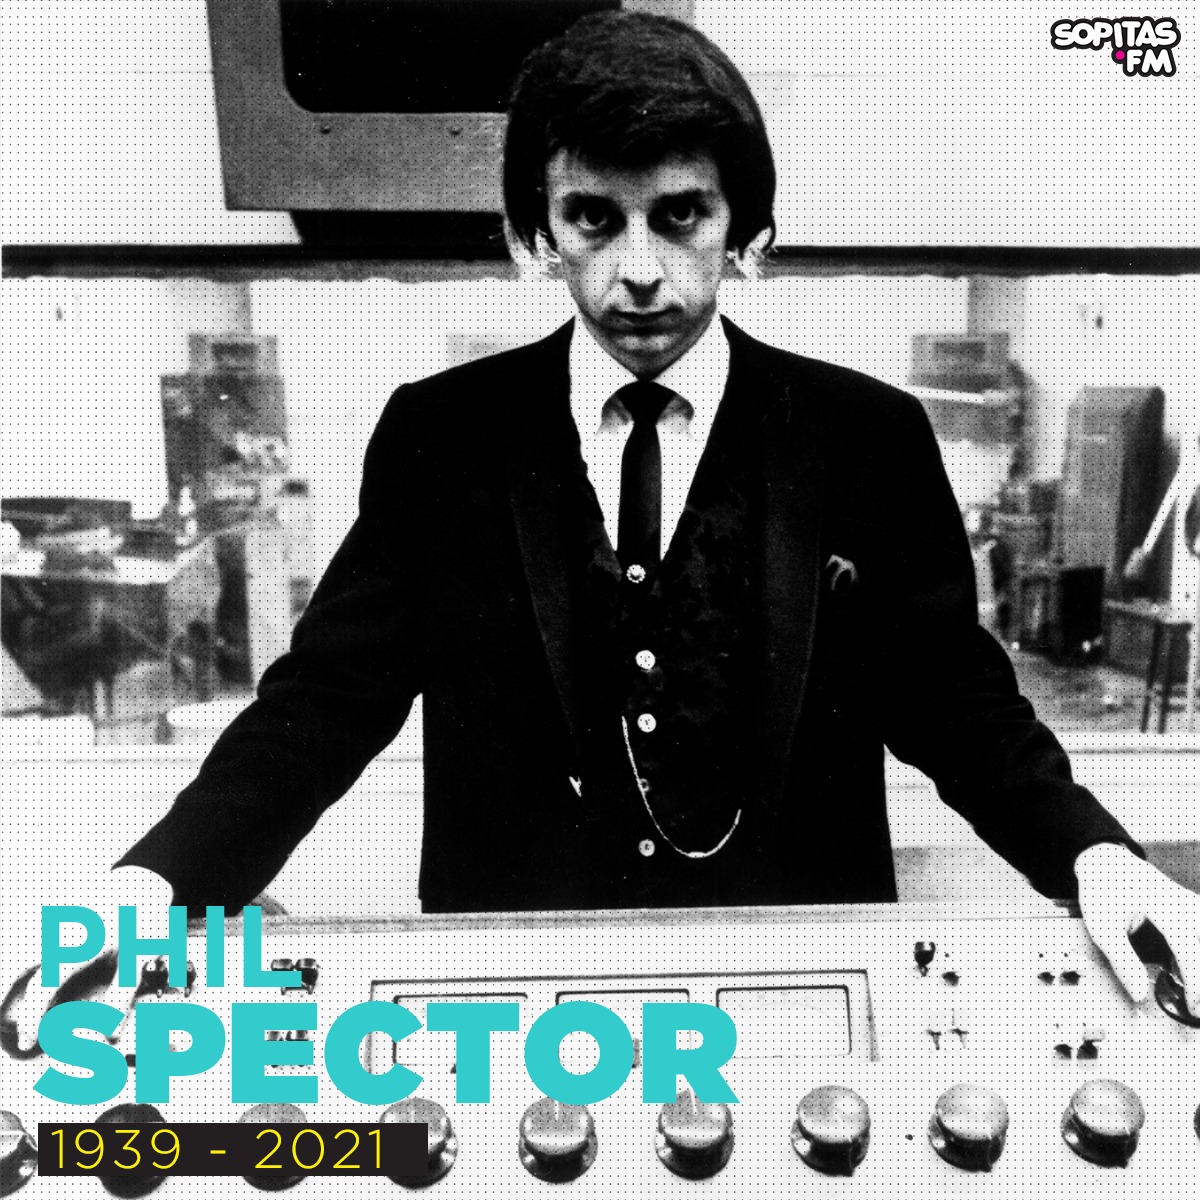 Murió el legendario productor musical Phil Spector a los 81 años